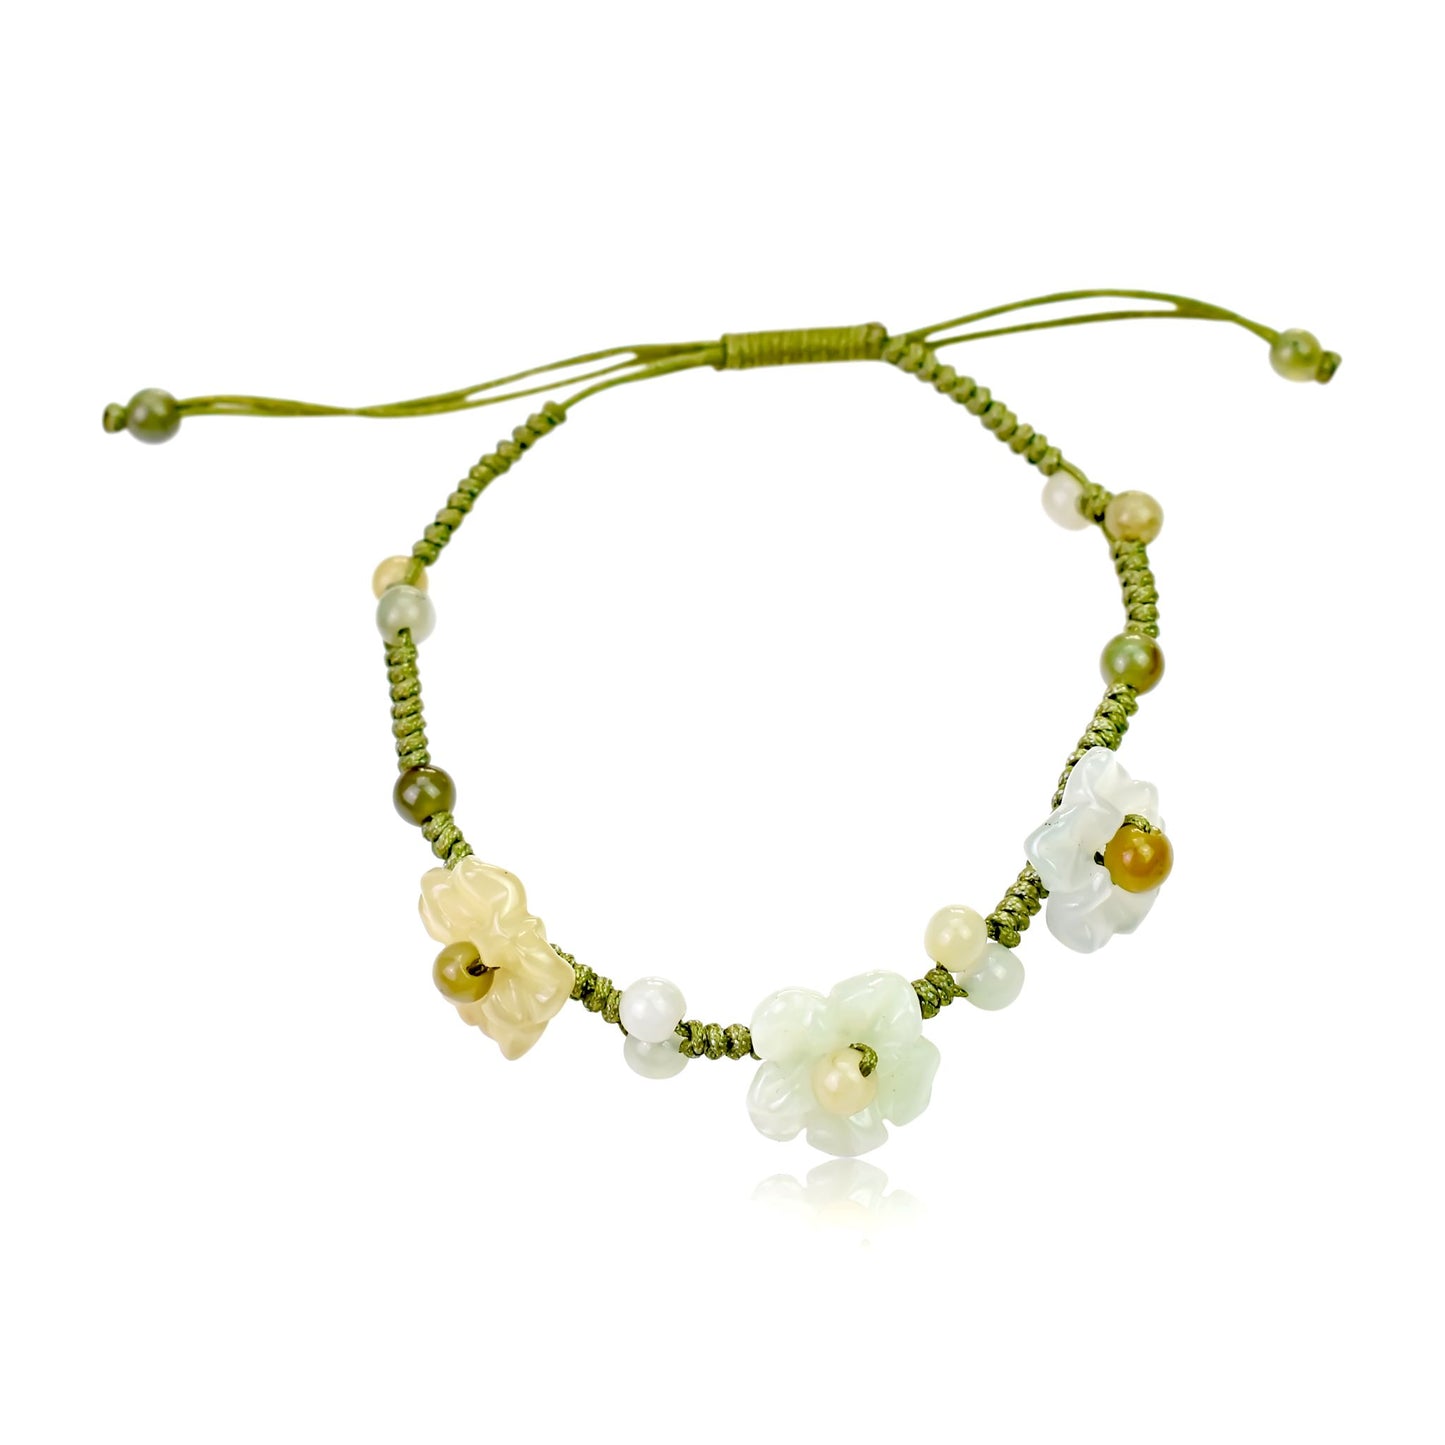 Feel Beautiful: Delicate & Dainty Scarlet Pimpernel Flower Jade Bracelet